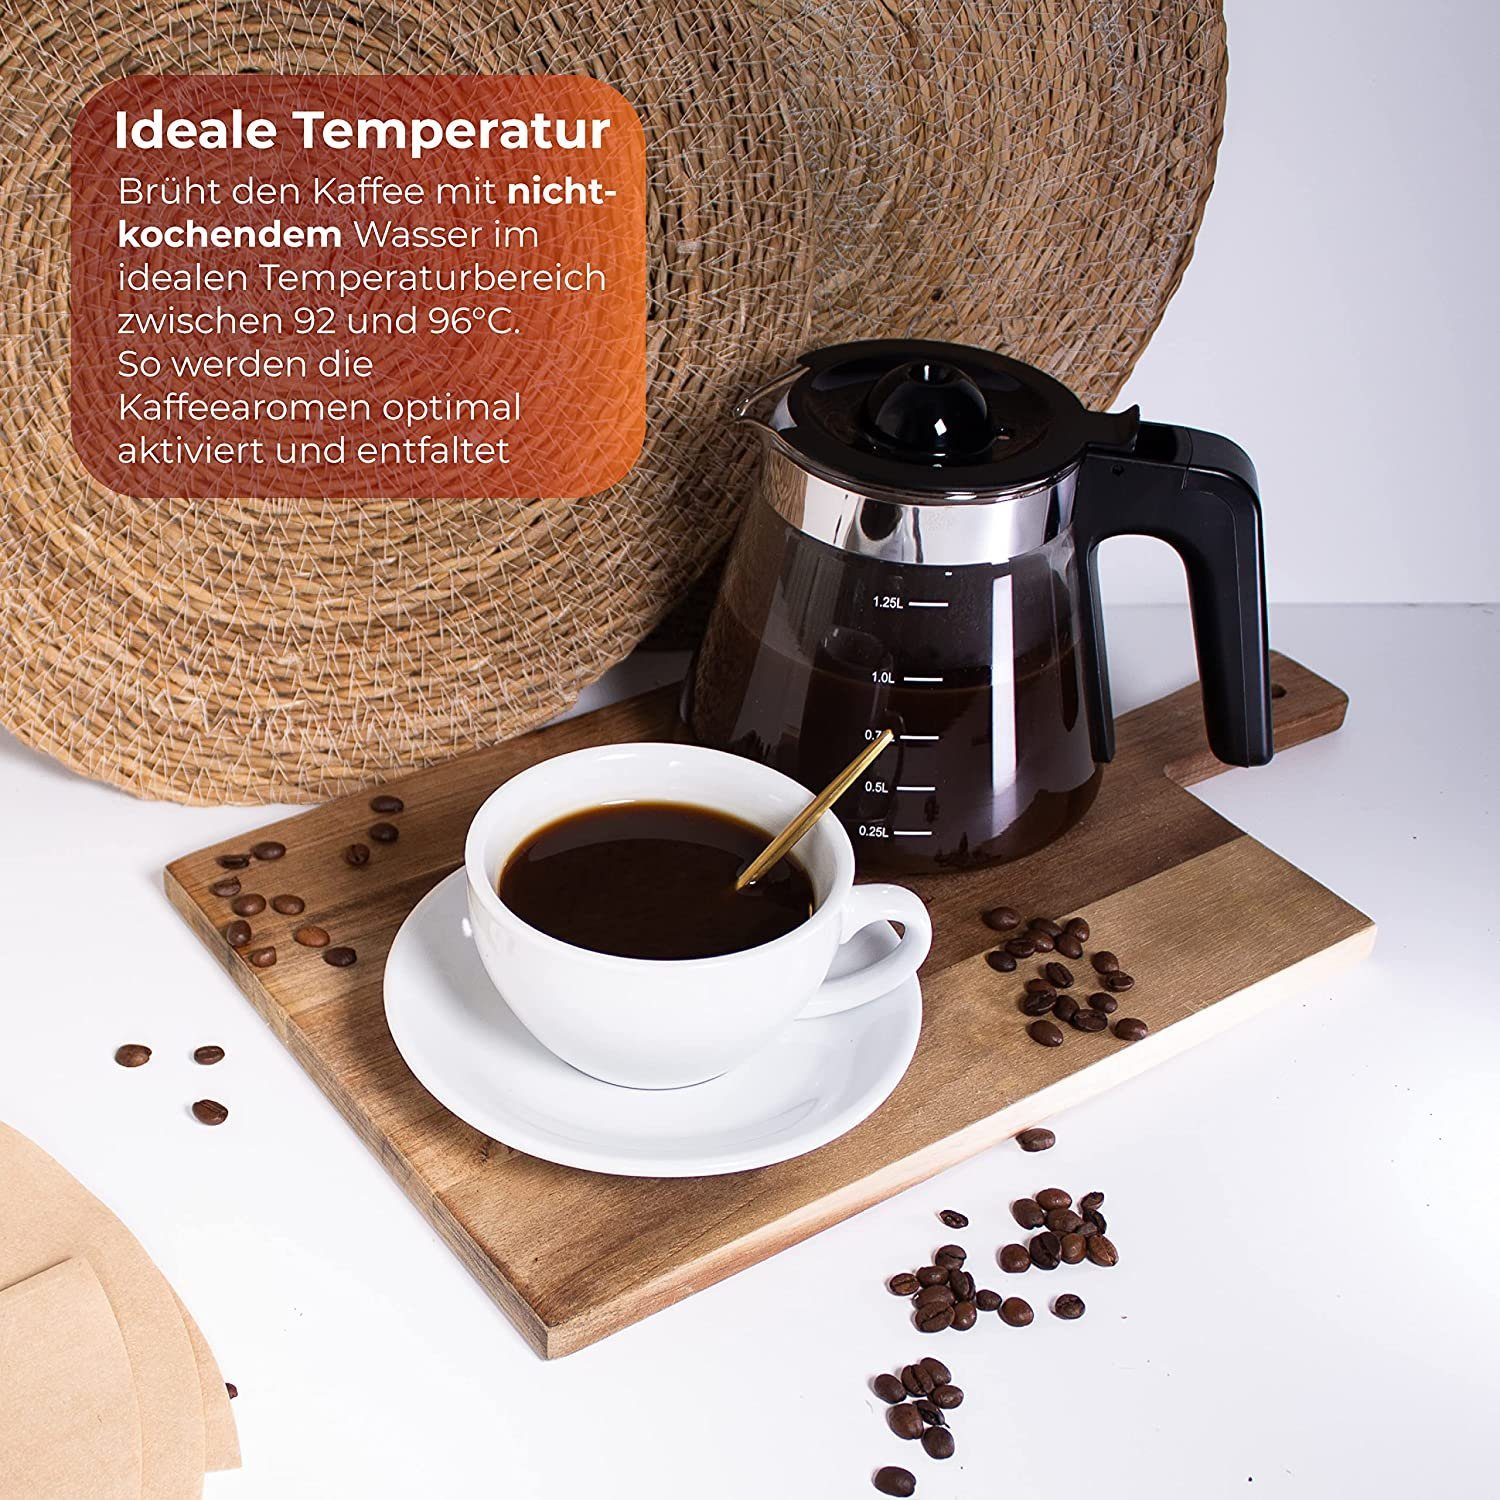 KLAMER Filterkaffeemaschine KLAMER Kaffeemaschine mit mit Glaskanne, Fassung… Kaffeebereiter 1,25L